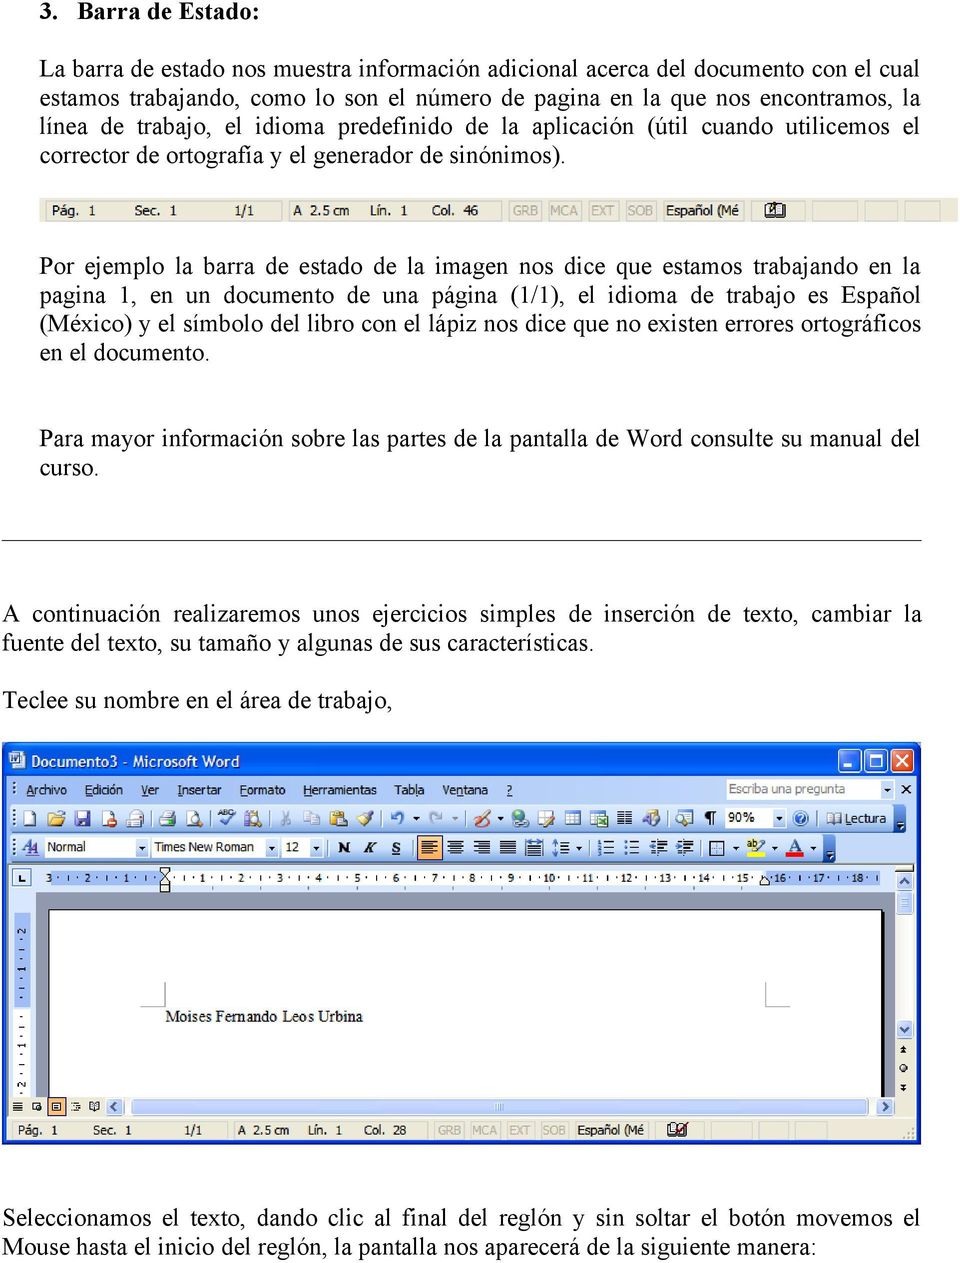 Por ejemplo la barra de estado de la imagen nos dice que estamos trabajando en la pagina 1, en un documento de una página (1/1), el idioma de trabajo es Español (México) y el símbolo del libro con el